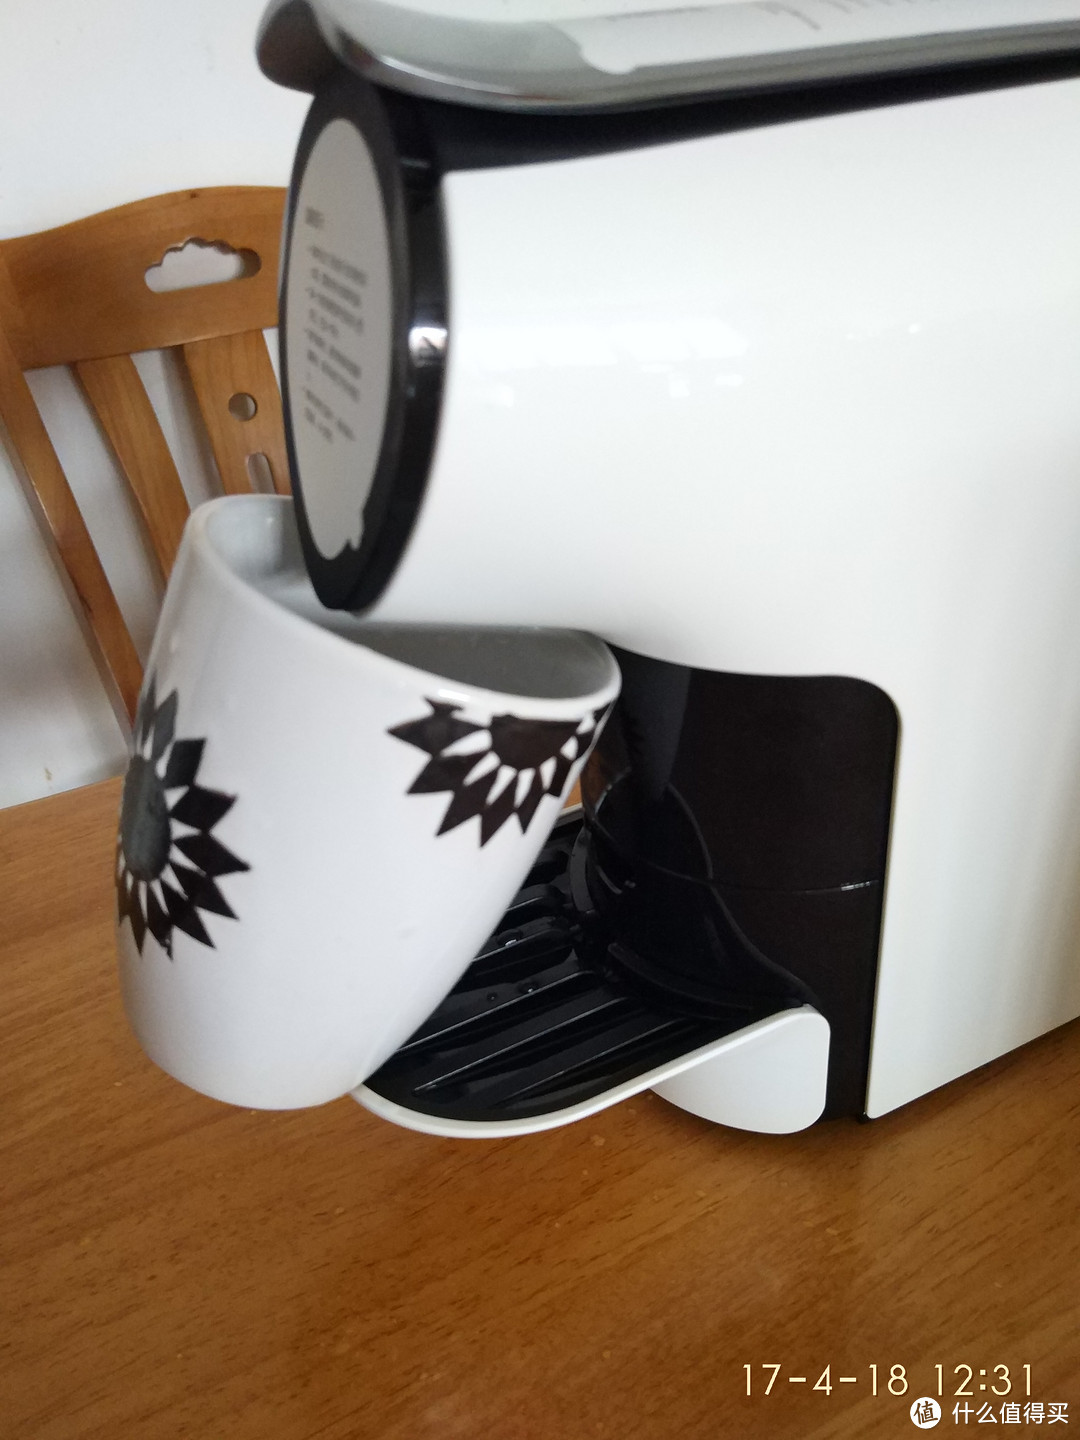 咖啡盲的胶囊咖啡机晒单 — MIJIA 米家 众筹 心想胶囊咖啡机